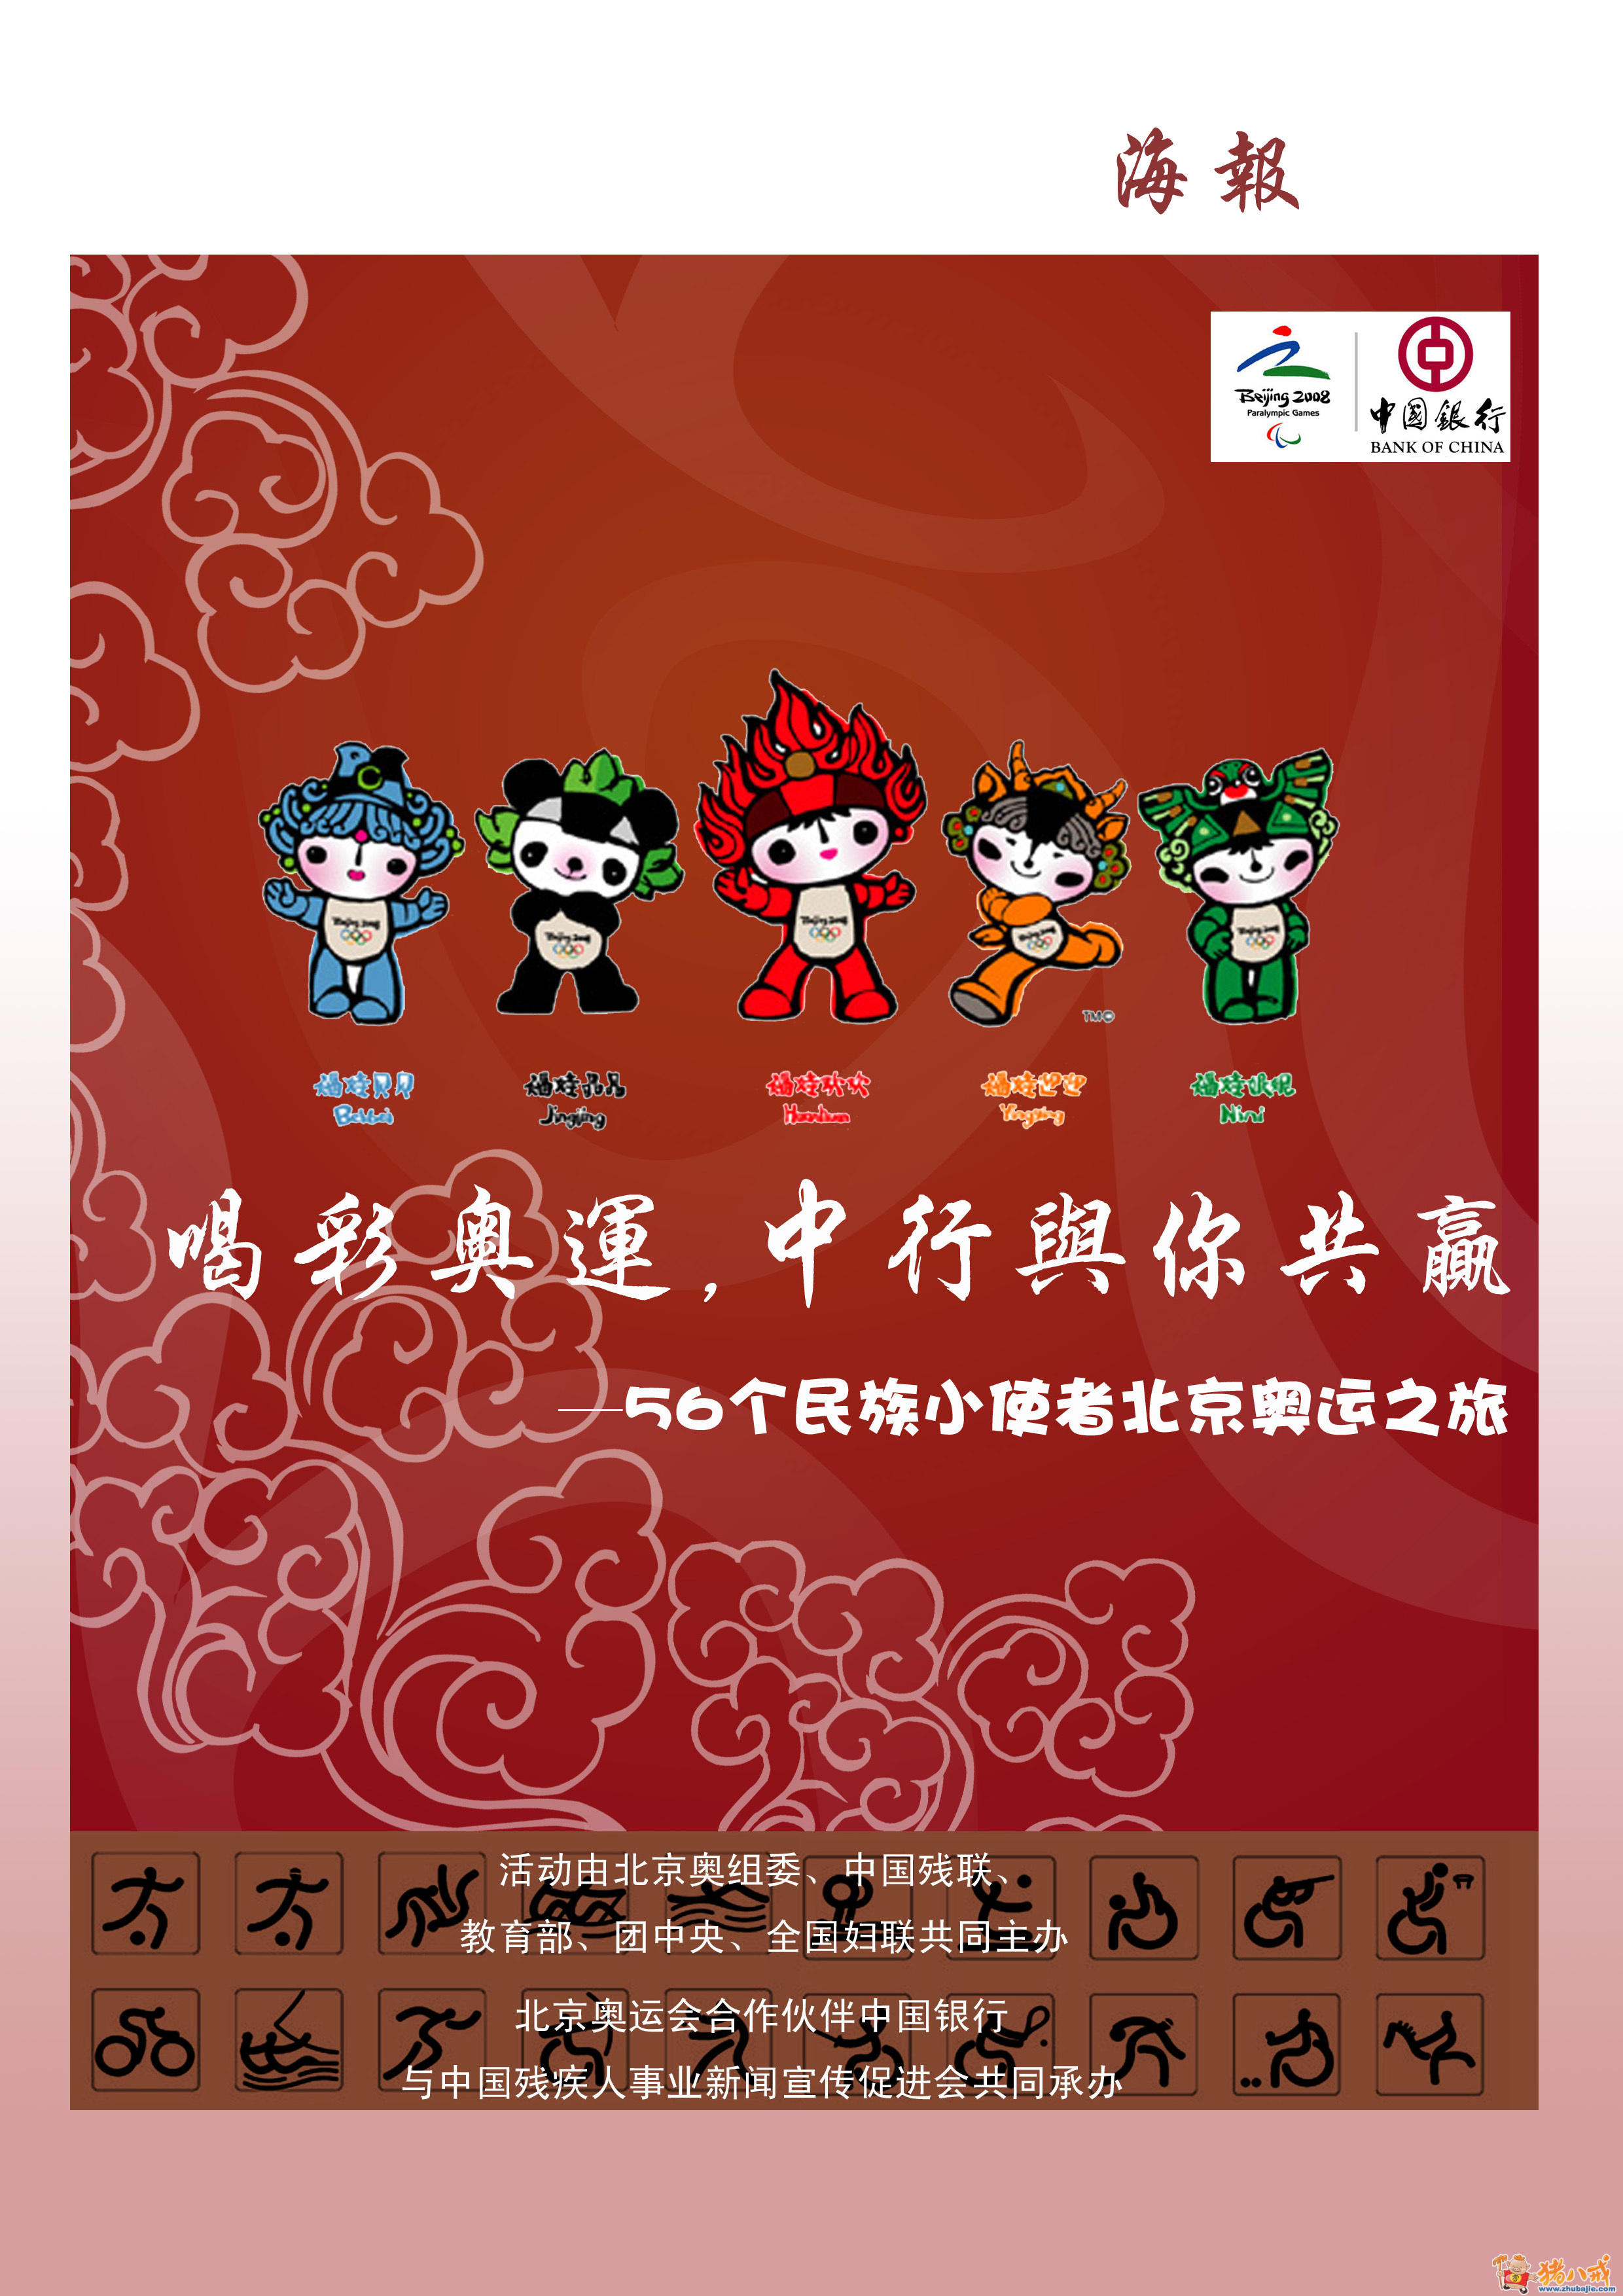 1000 56个民族小使者北京奥运之旅活动招贴画,彩旗,宣传册